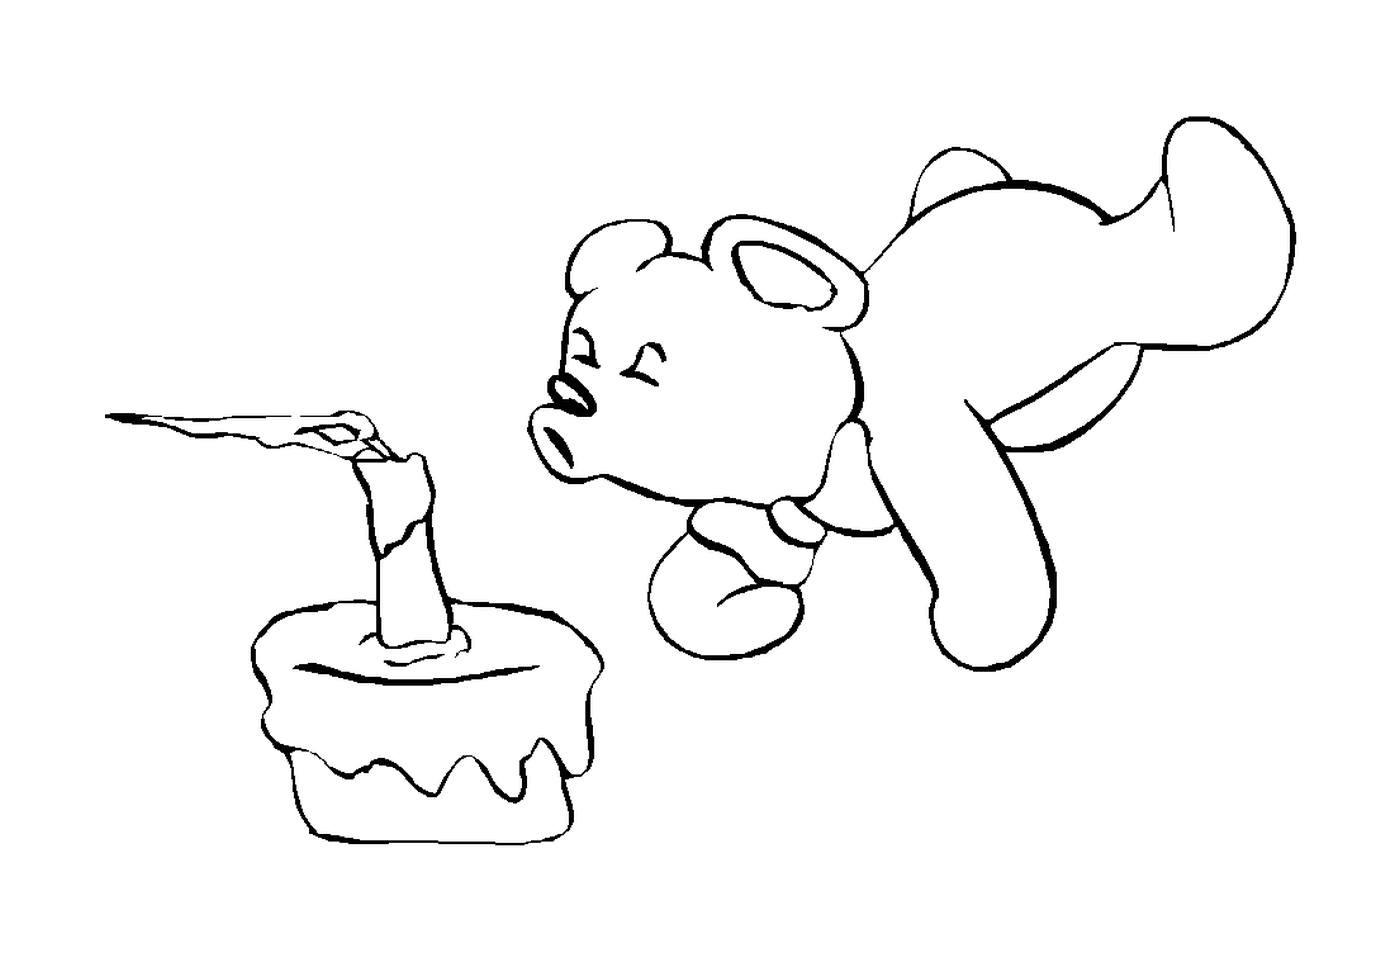  Bear looking at a cake 